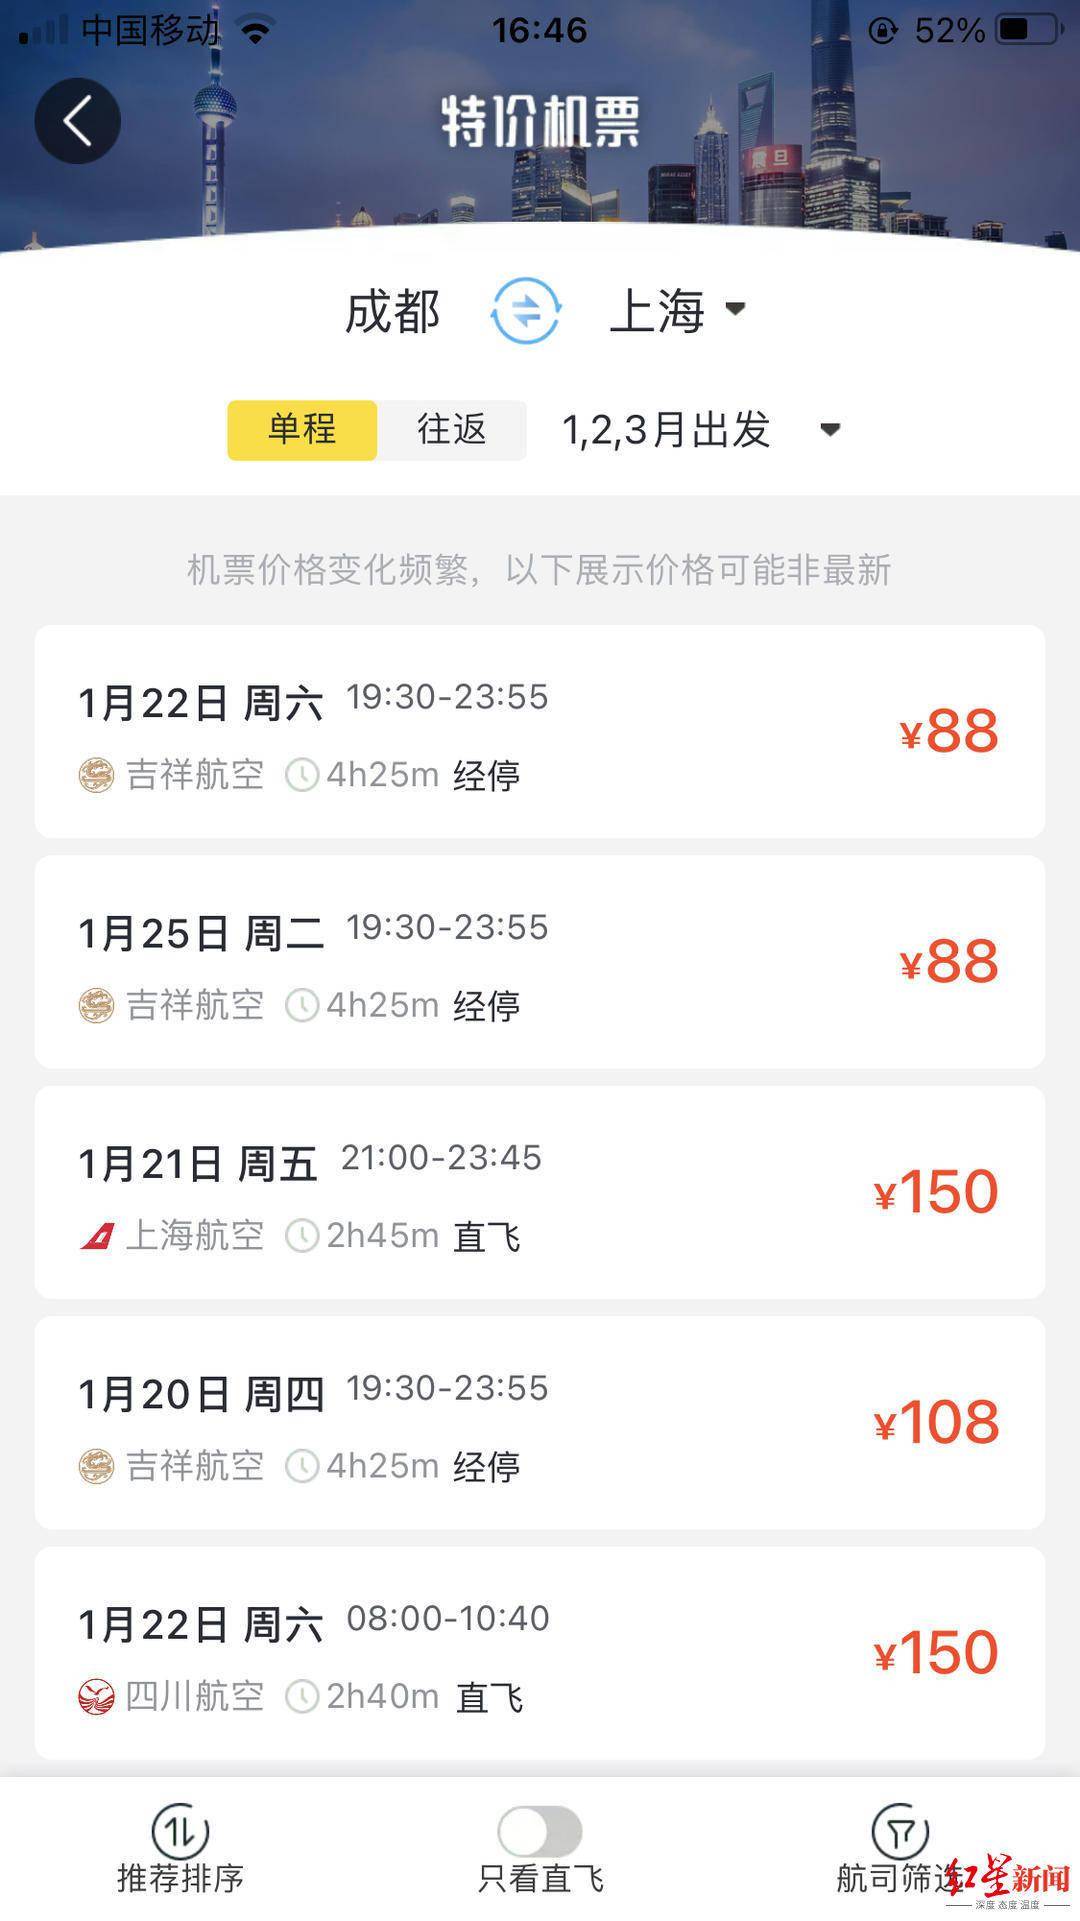 查找从上海地区飞往广州的便宜机票 | momondo